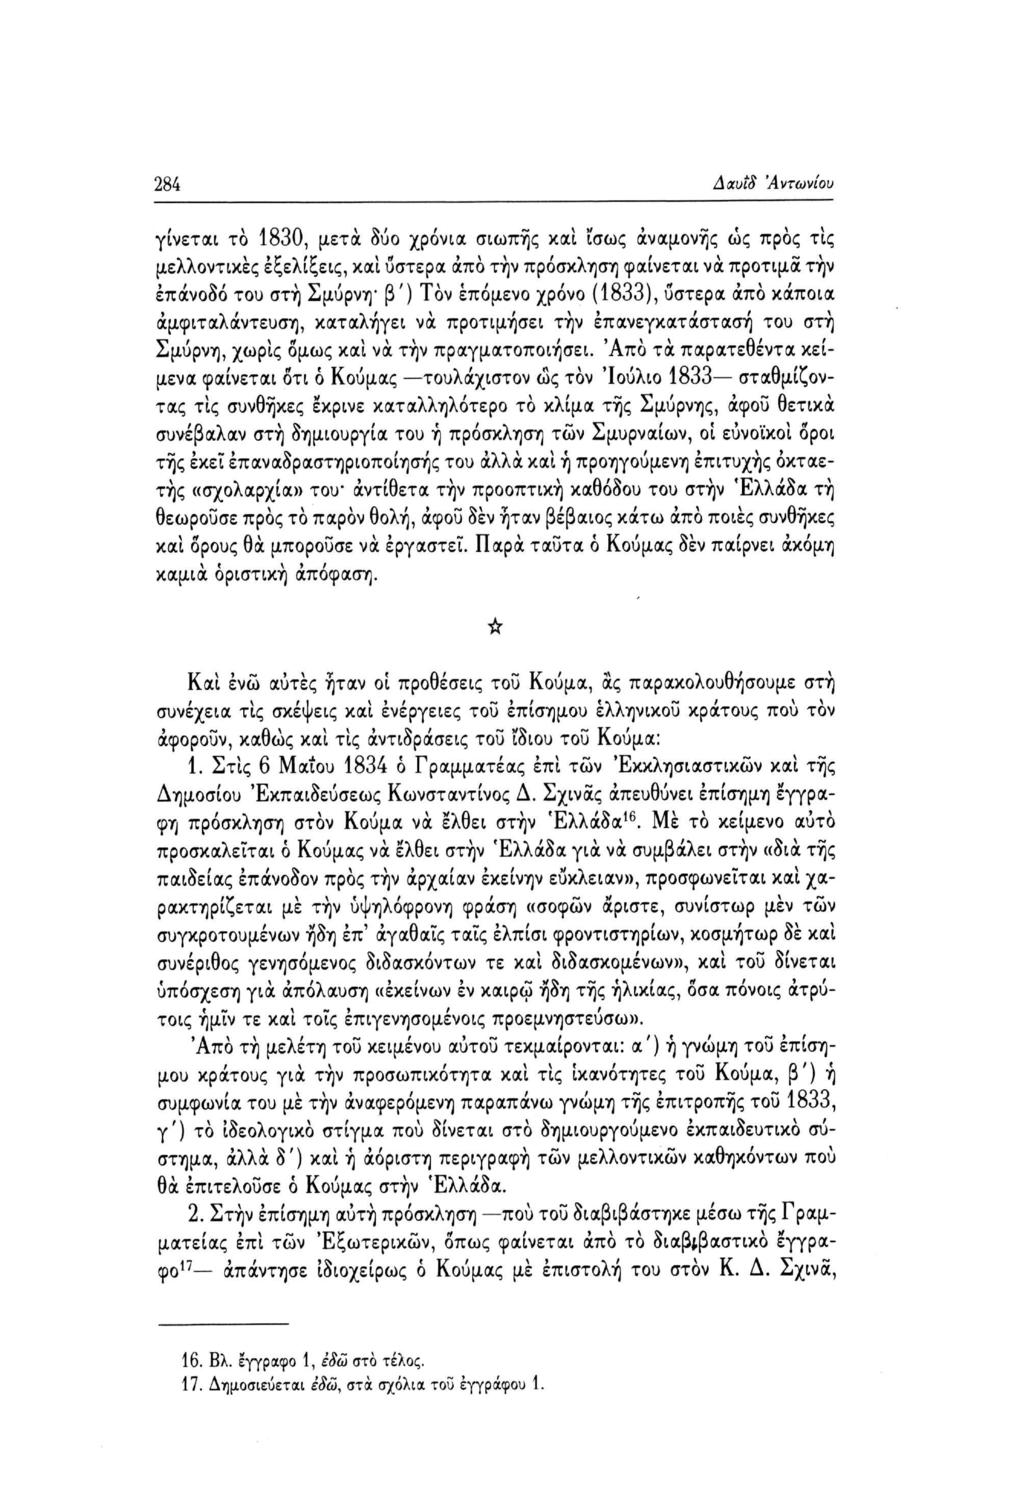 Δαυΐδ 'Αντωνίου 284 γίνεται το 1830, μετά δύο χρόνια σιωπής και ίσως αναμονής ώς προς τις μελλοντικές εξελίξεις, και ύστερα άπο τήν πρόσκληση φαίνεται να προτιμά την επάνοδο του στη Σμύρνη β') Τον